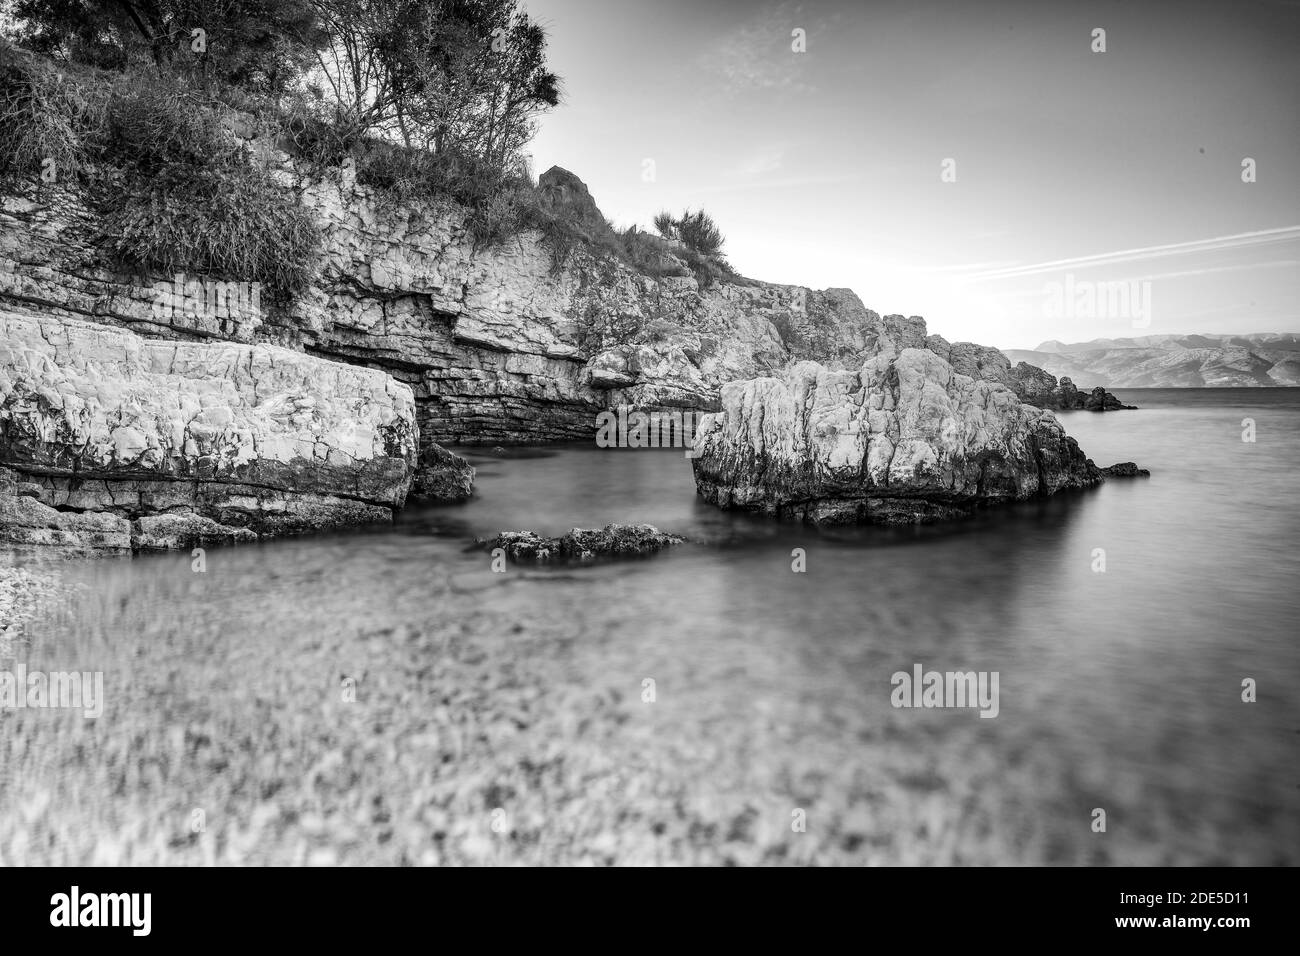 Côte grecque, eau calme, rochers, paysages méditerranéens, mer Ionienne, vue de Kassiopi - une ville grecque sur l'île de Corfou. Bnw Banque D'Images